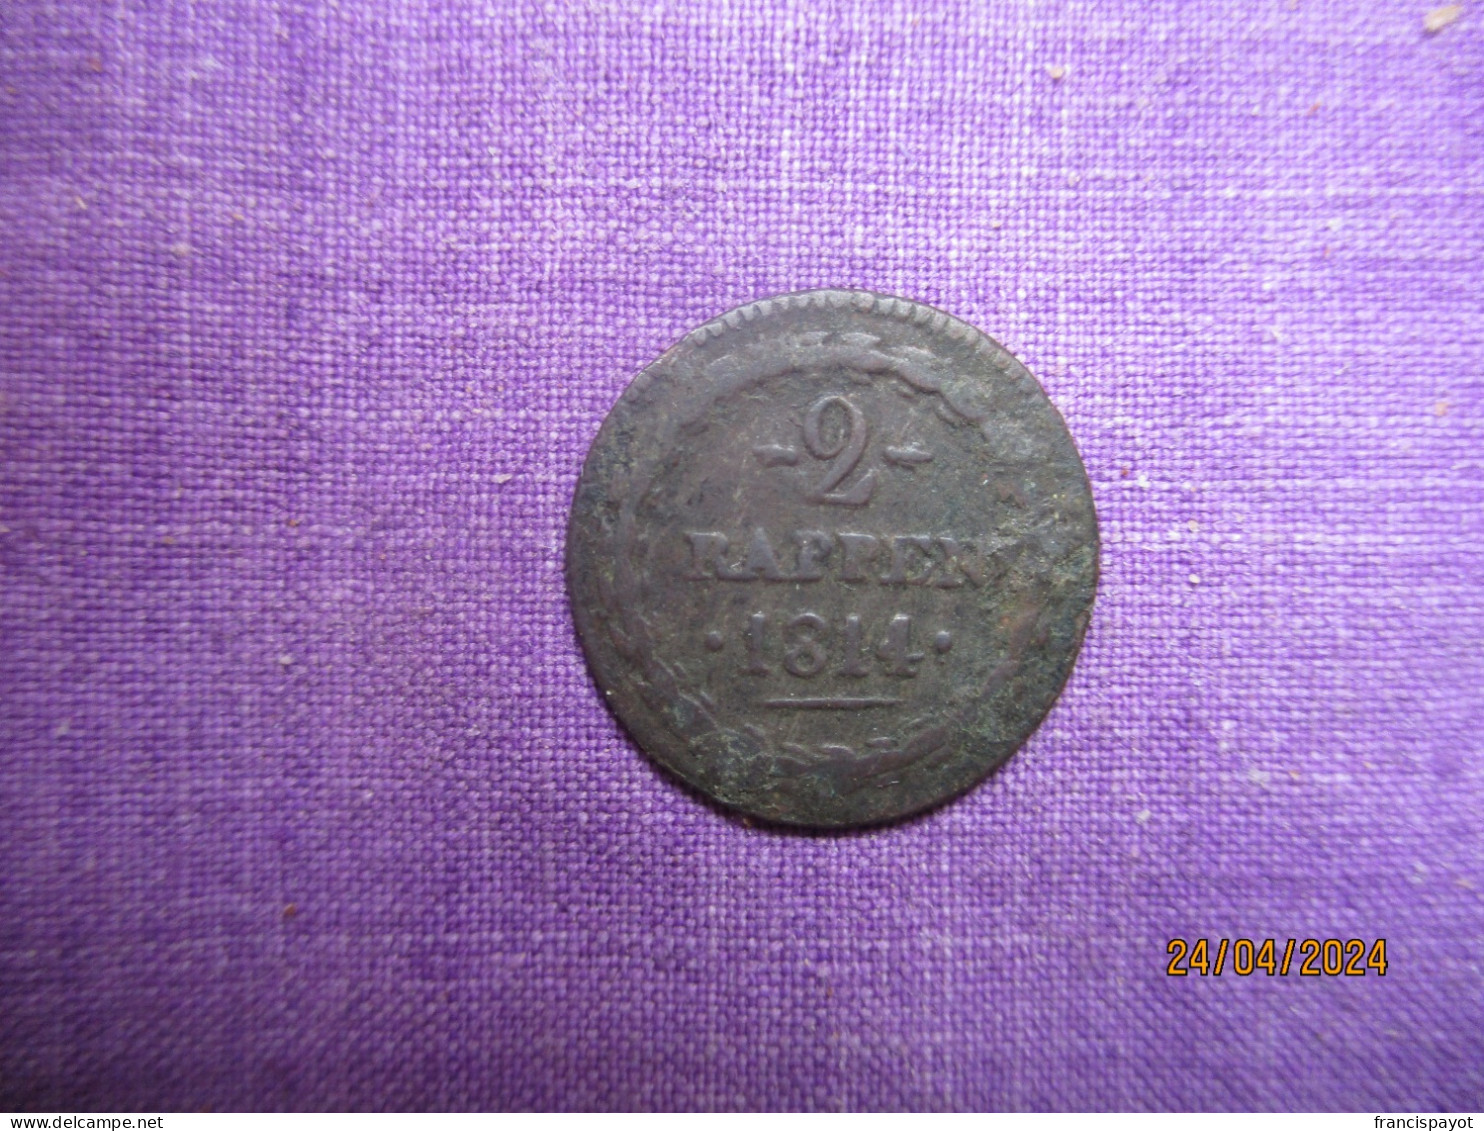 Suisse - Aargau 2 Rappen 1814 - Monnaies Cantonales